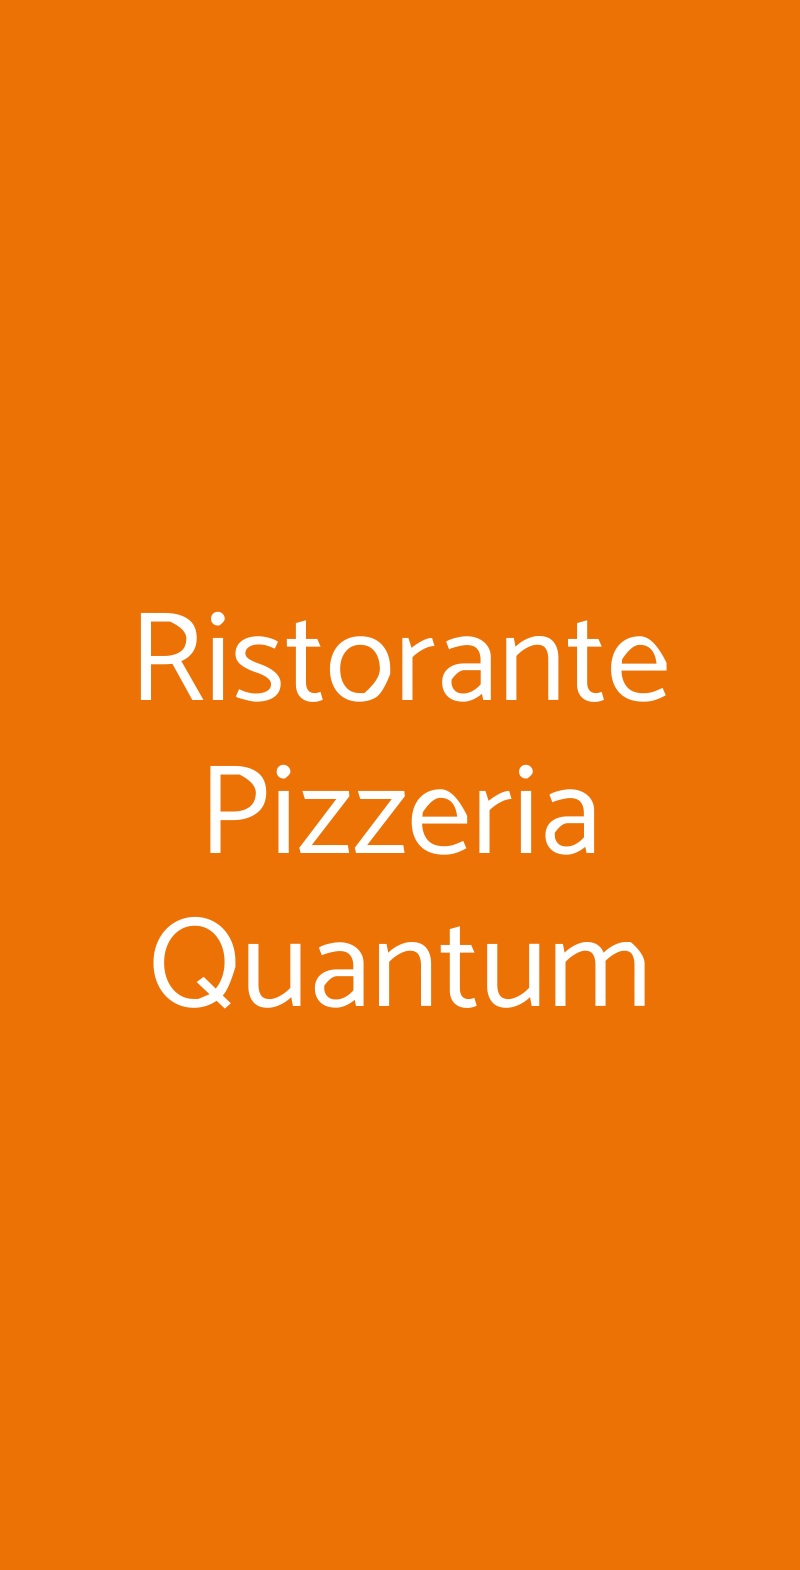 Ristorante Pizzeria Quantum Ciampino menù 1 pagina